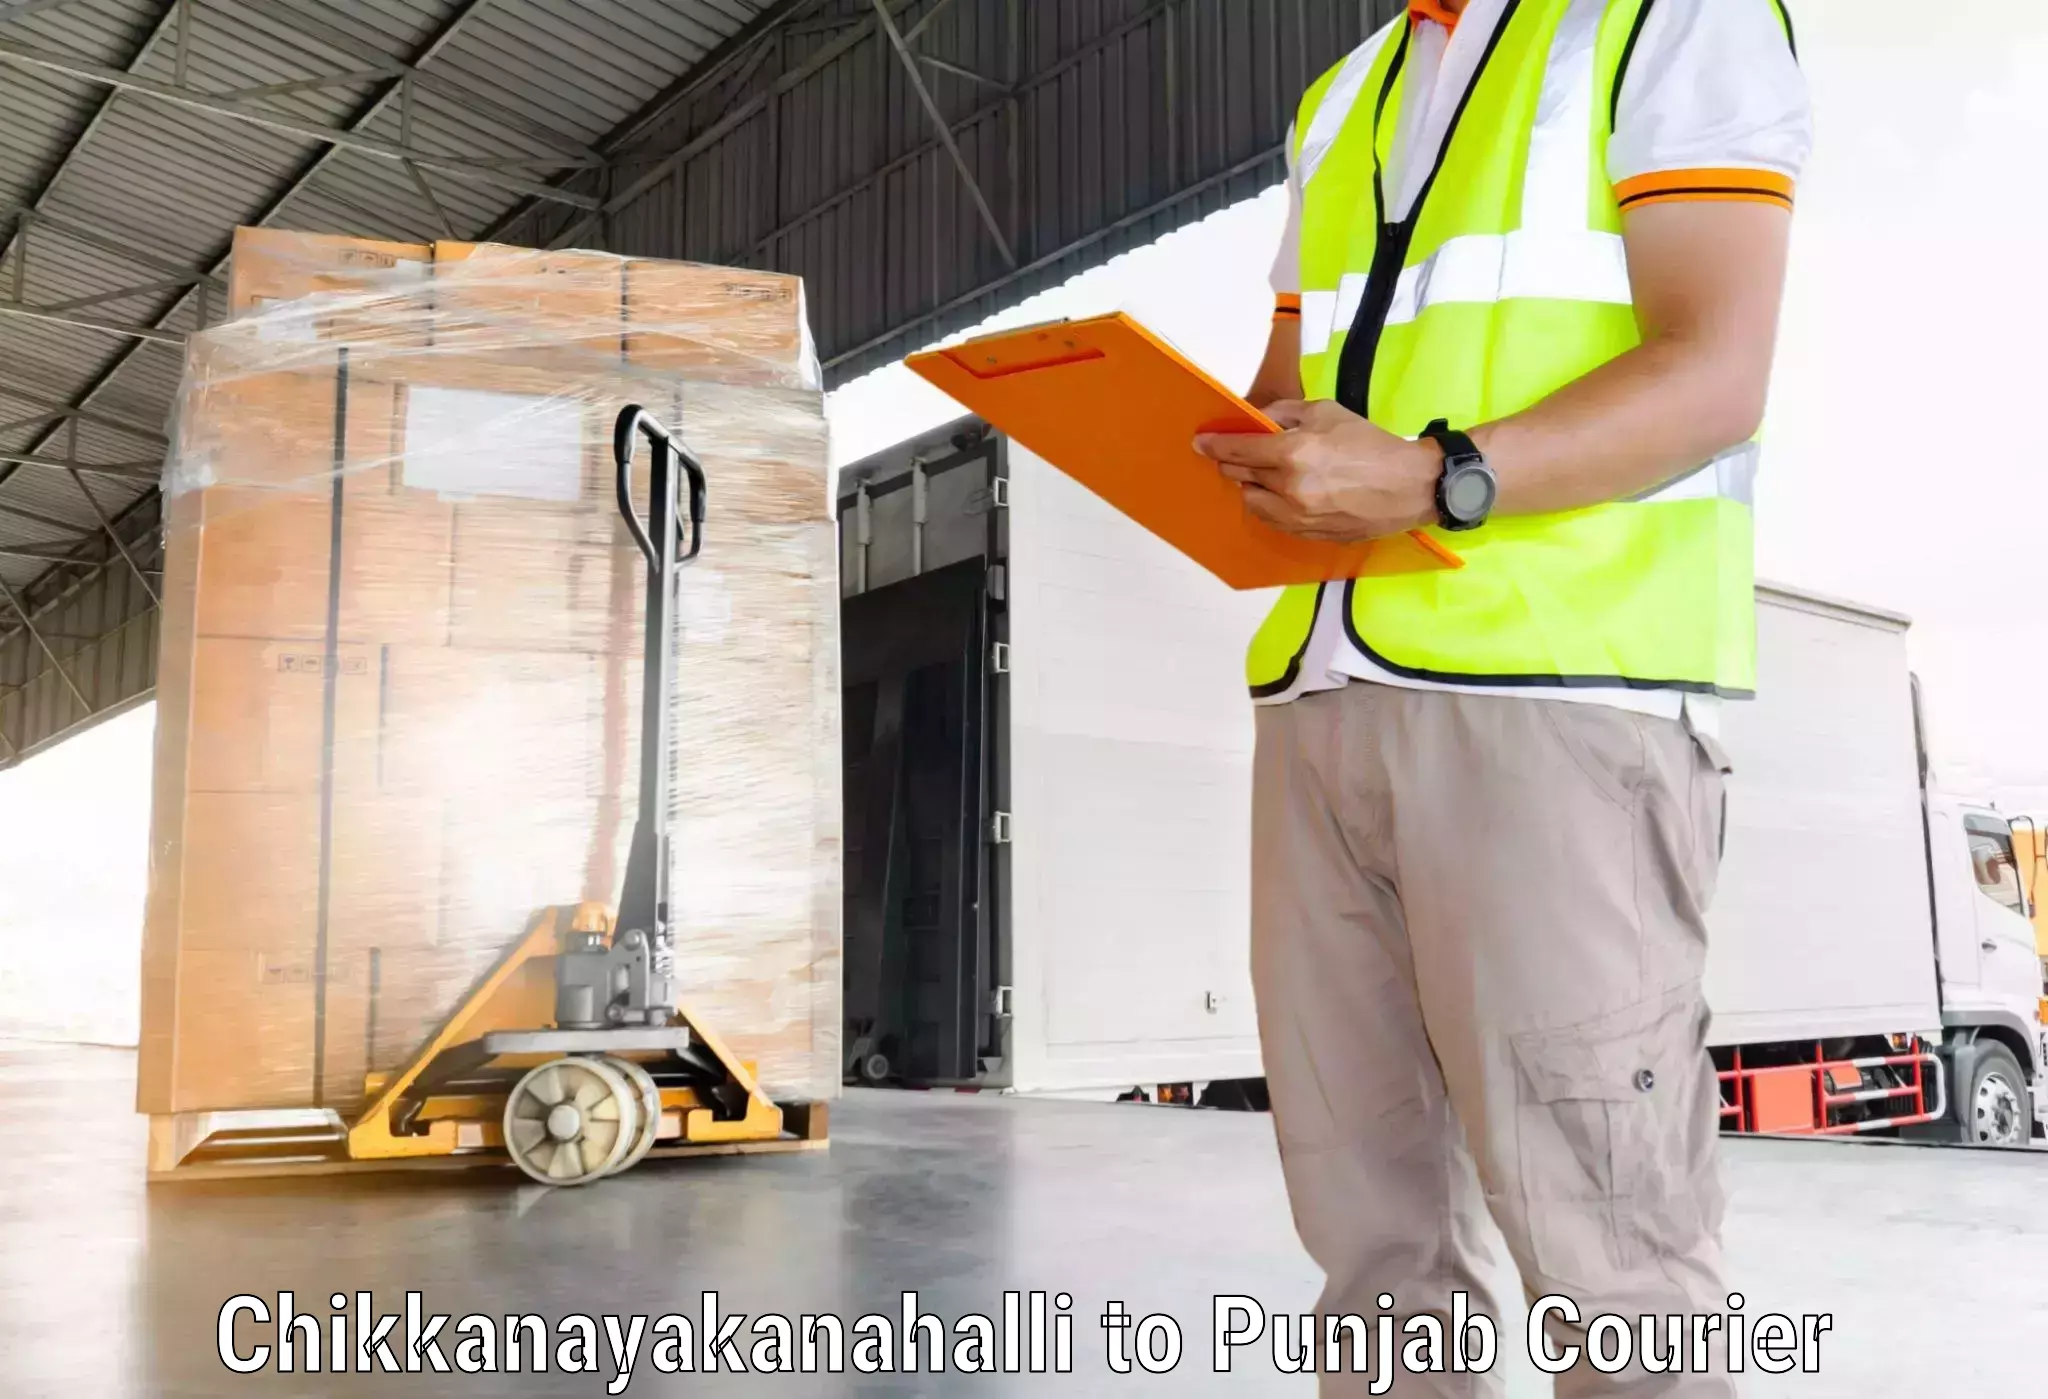 Flexible courier rates Chikkanayakanahalli to Punjab